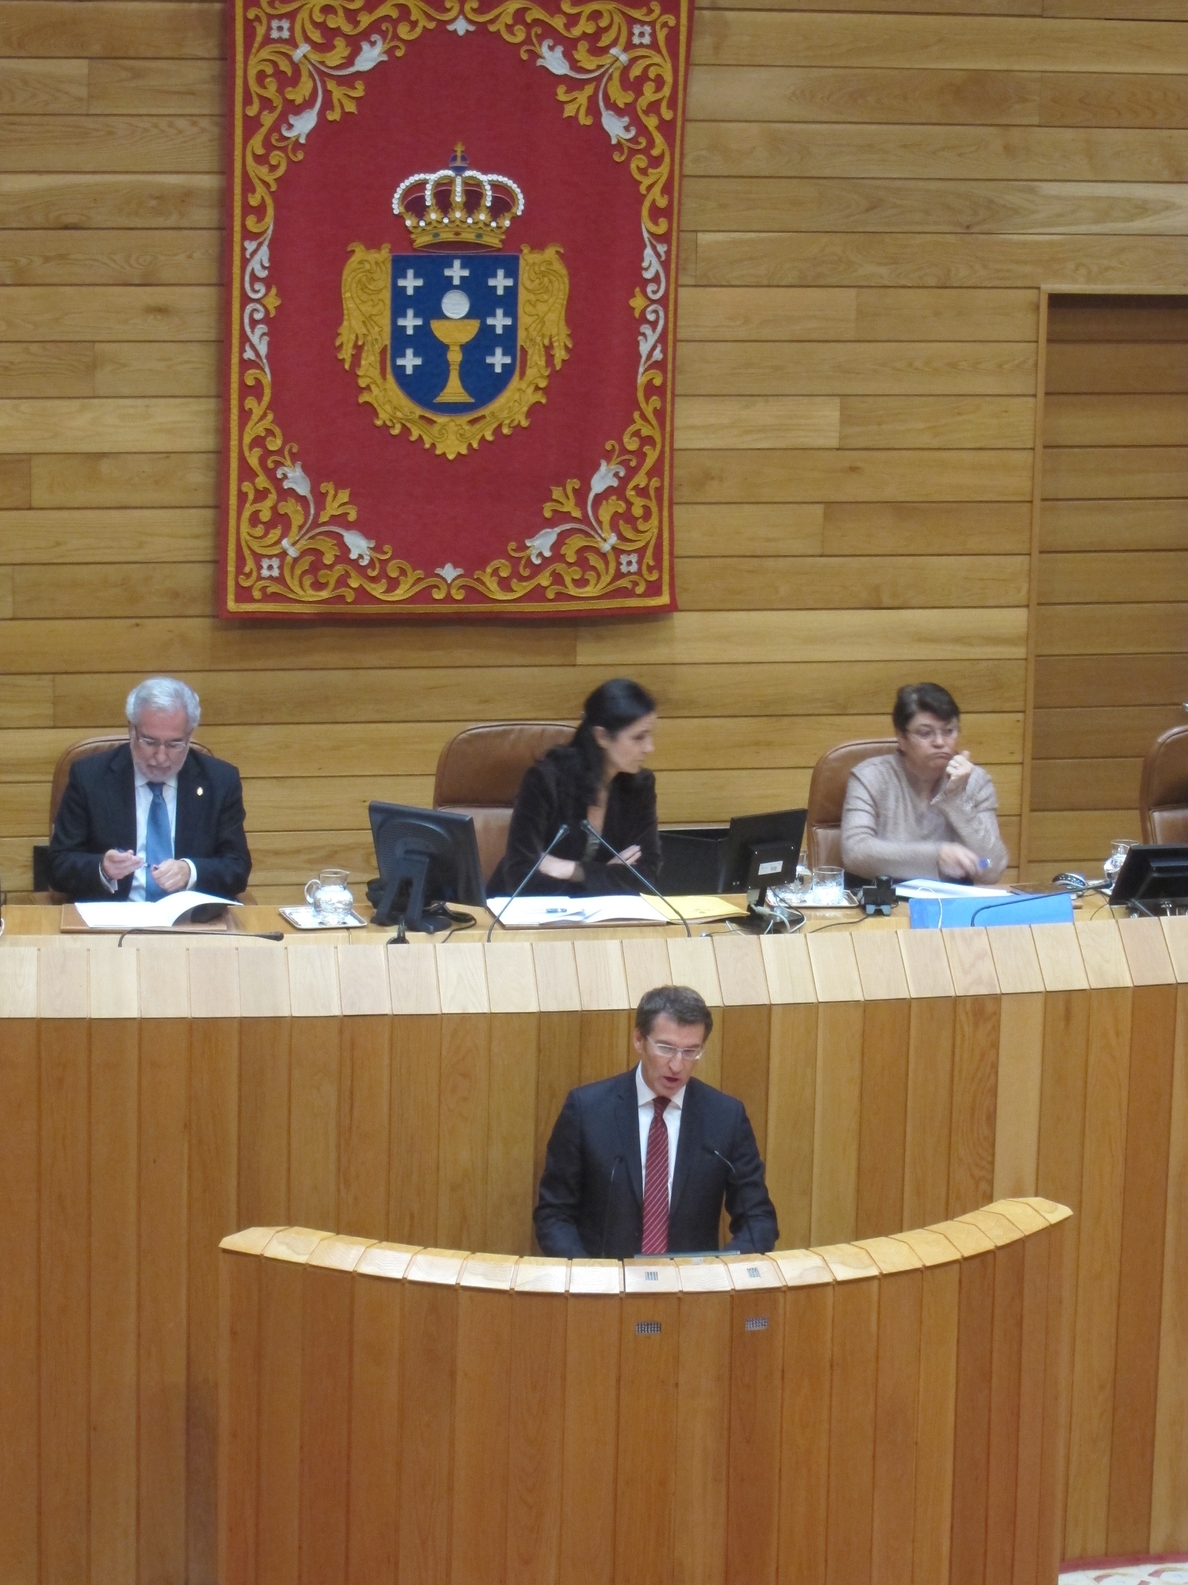 Feijóo propone cinco leyes gallegas anticorrupción y de transparencia y pide «aportaciones» de la oposición